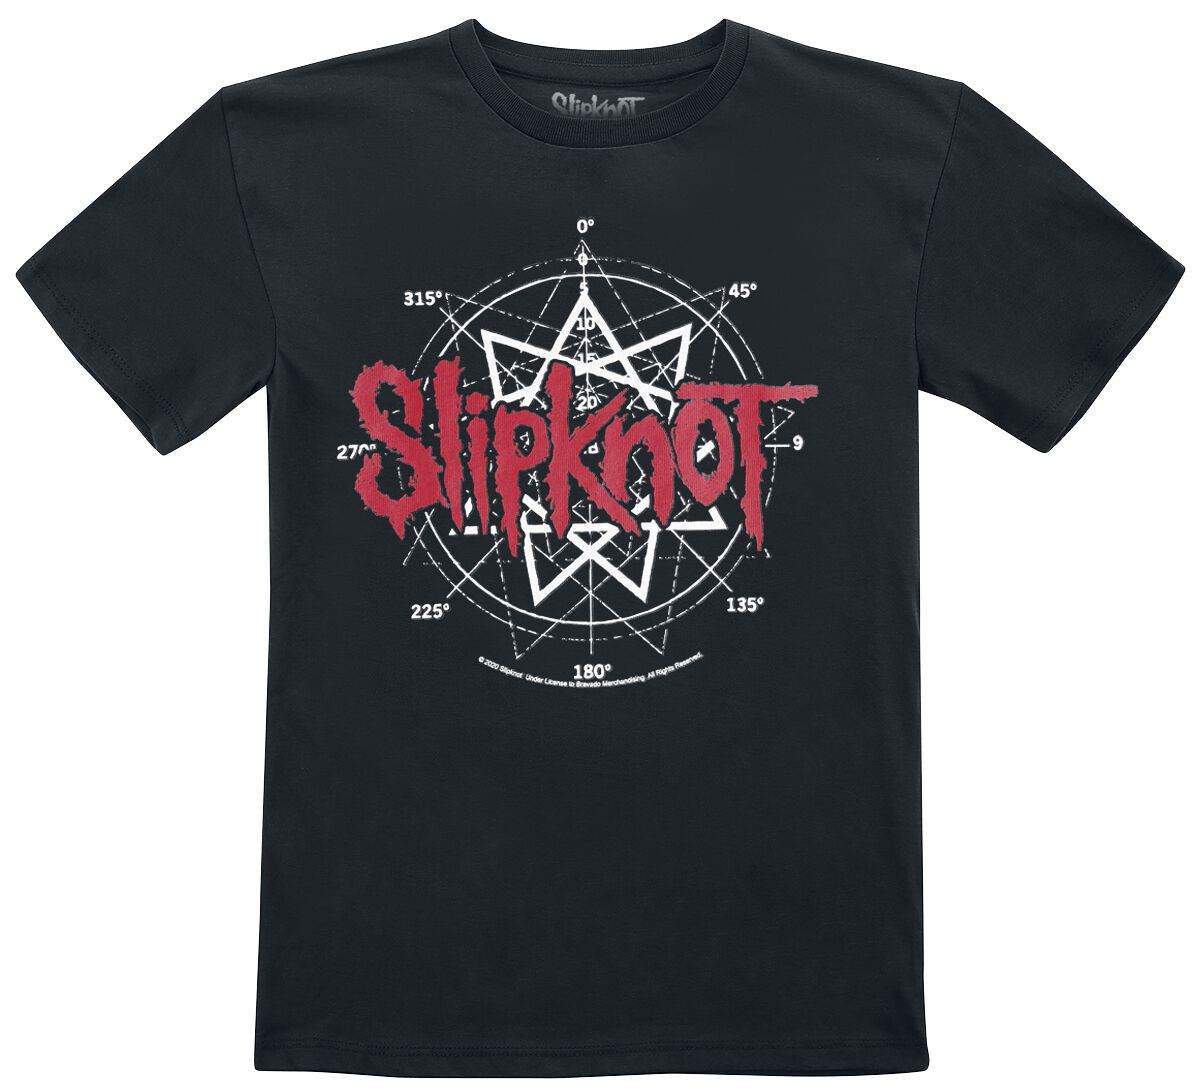 Slipknot T-Shirt für Kleinkinder - Metal-Kids - Star Symbol - für Mädchen & Jungen - schwarz  - Lizenziertes Merchandise!